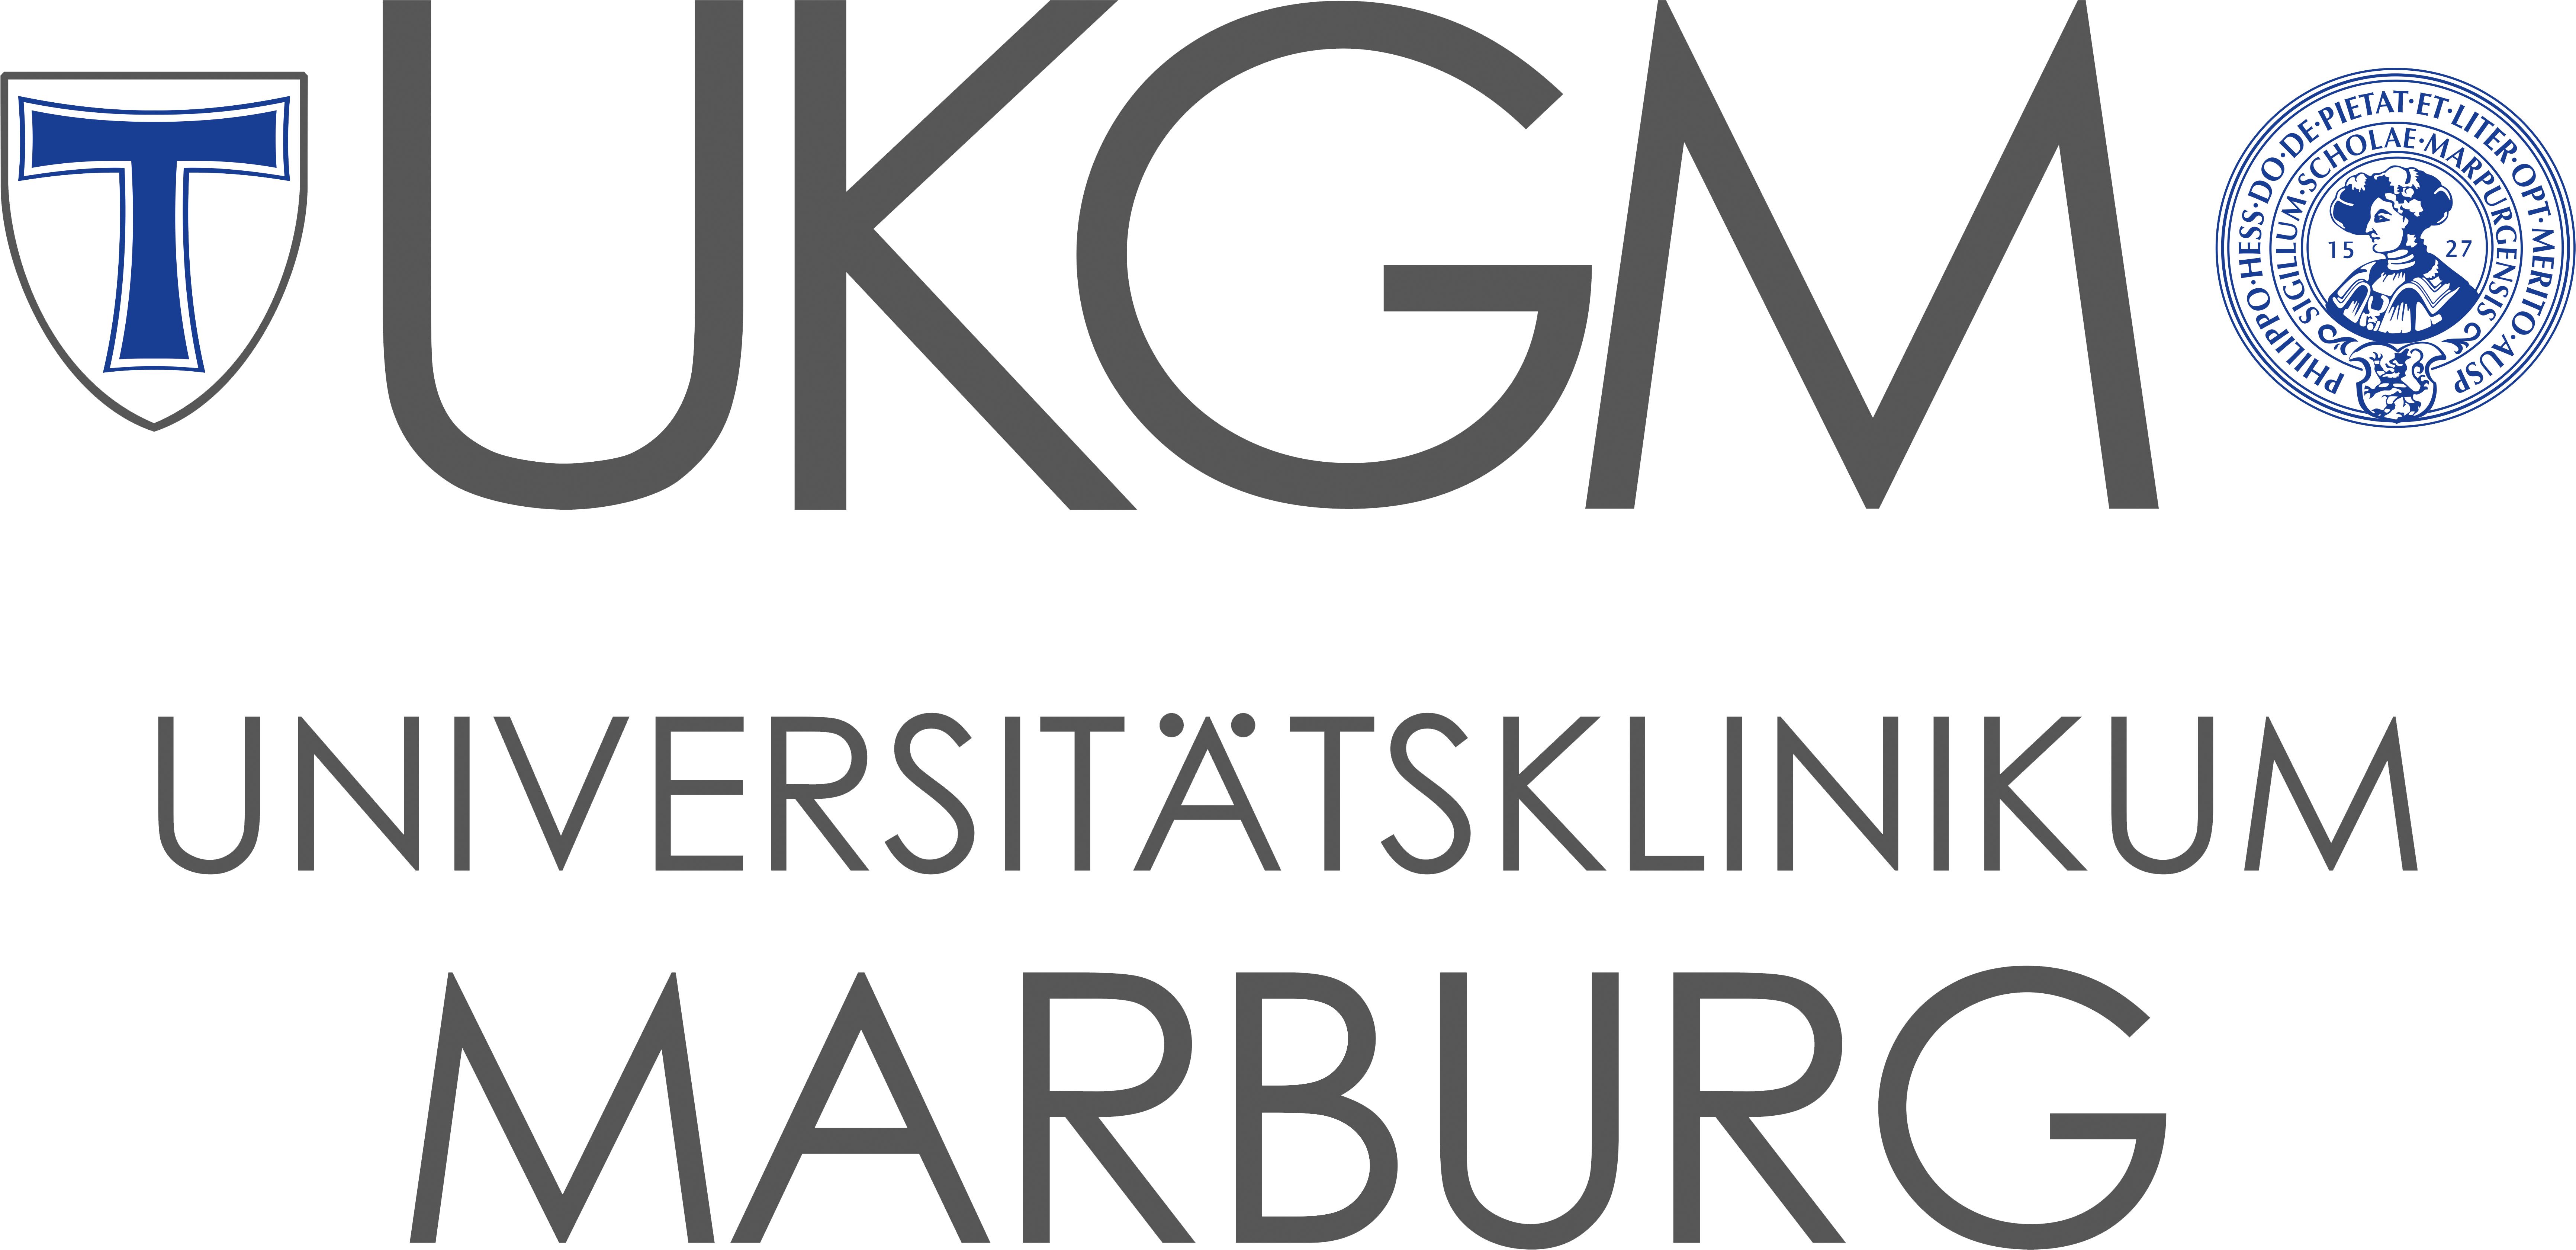 Universitätsklinikum Gießen und Marburg, Standort Marburg